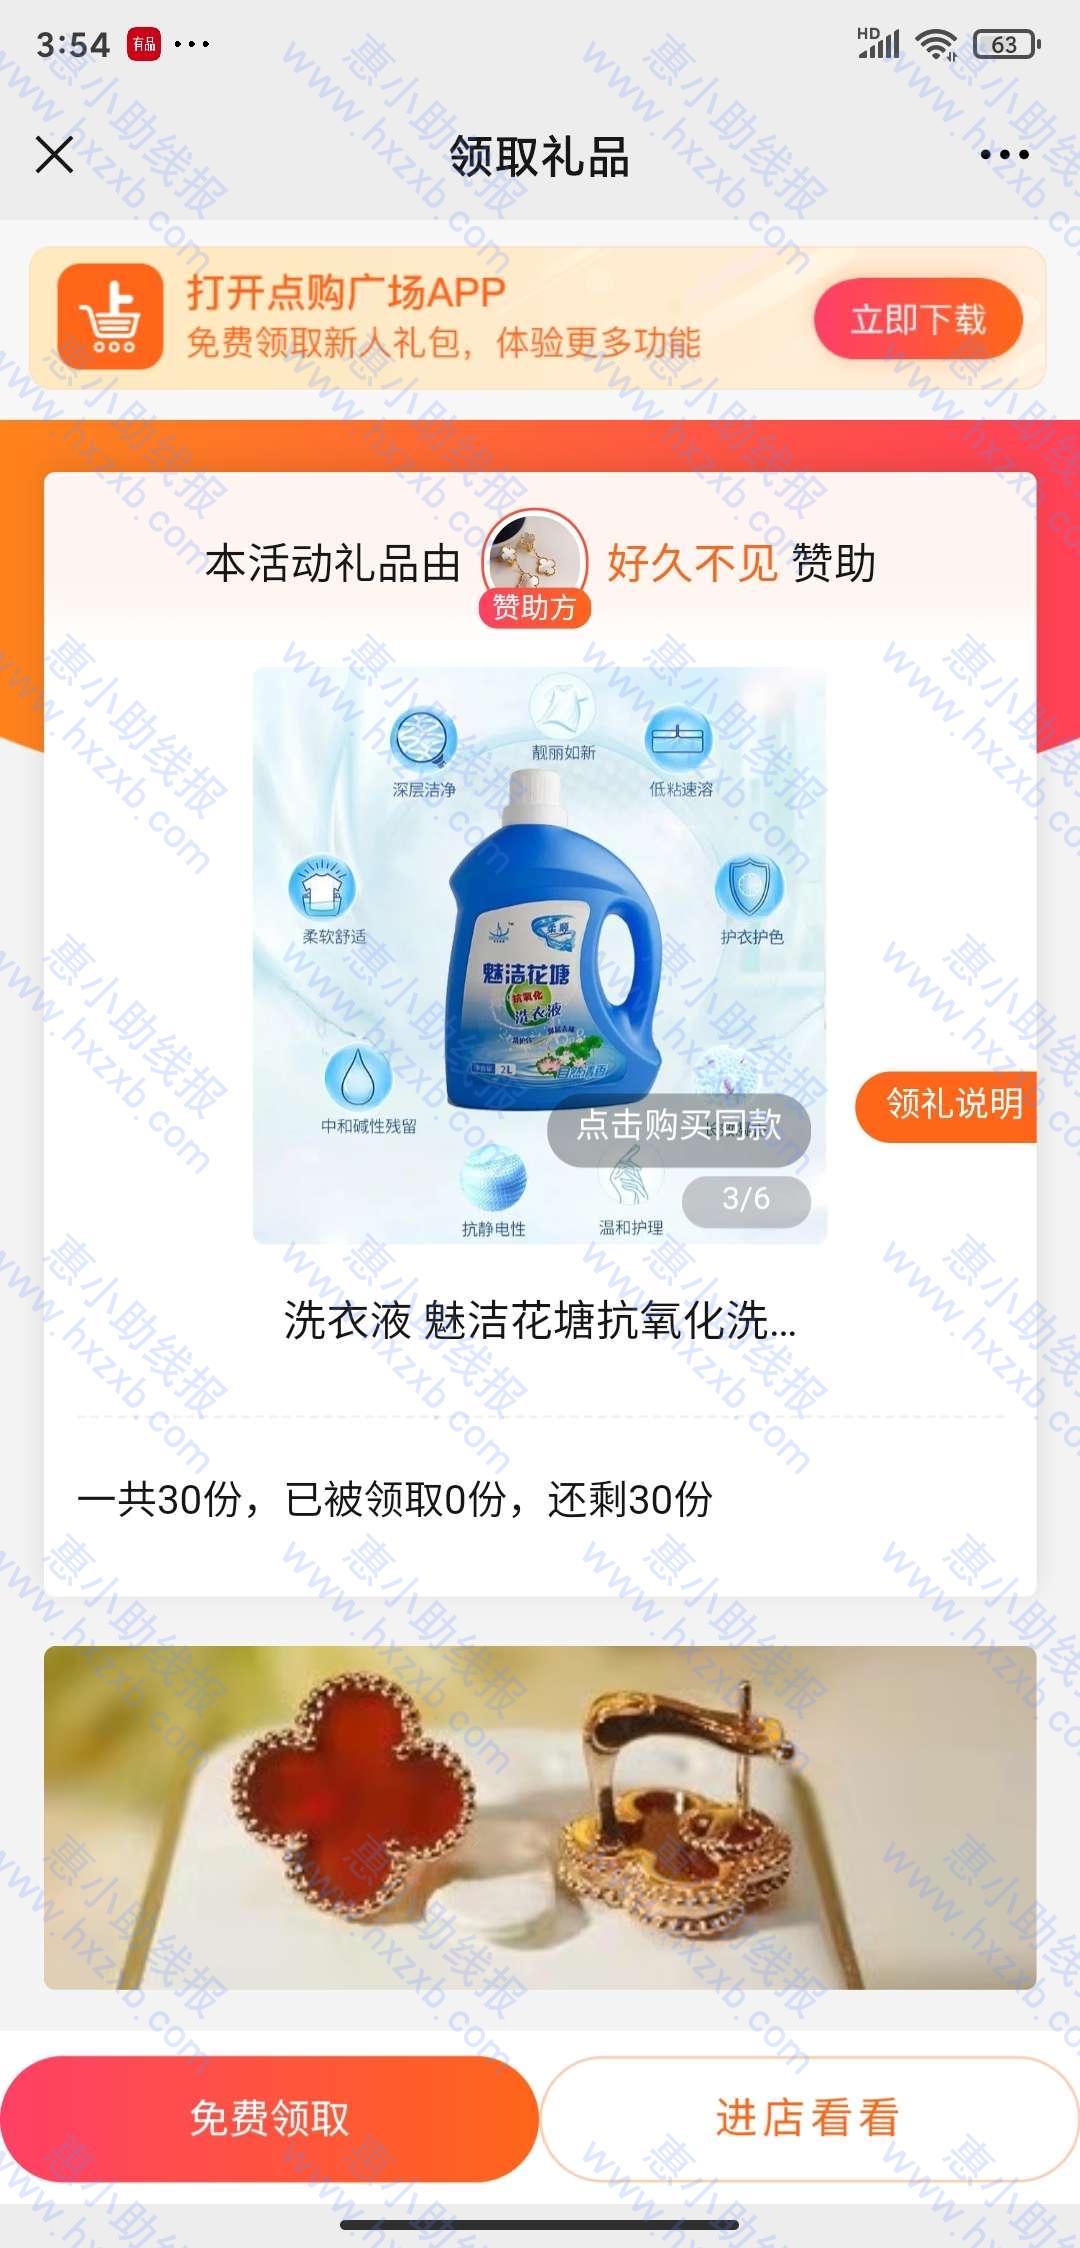 点购广场app新用户领洗衣液200g